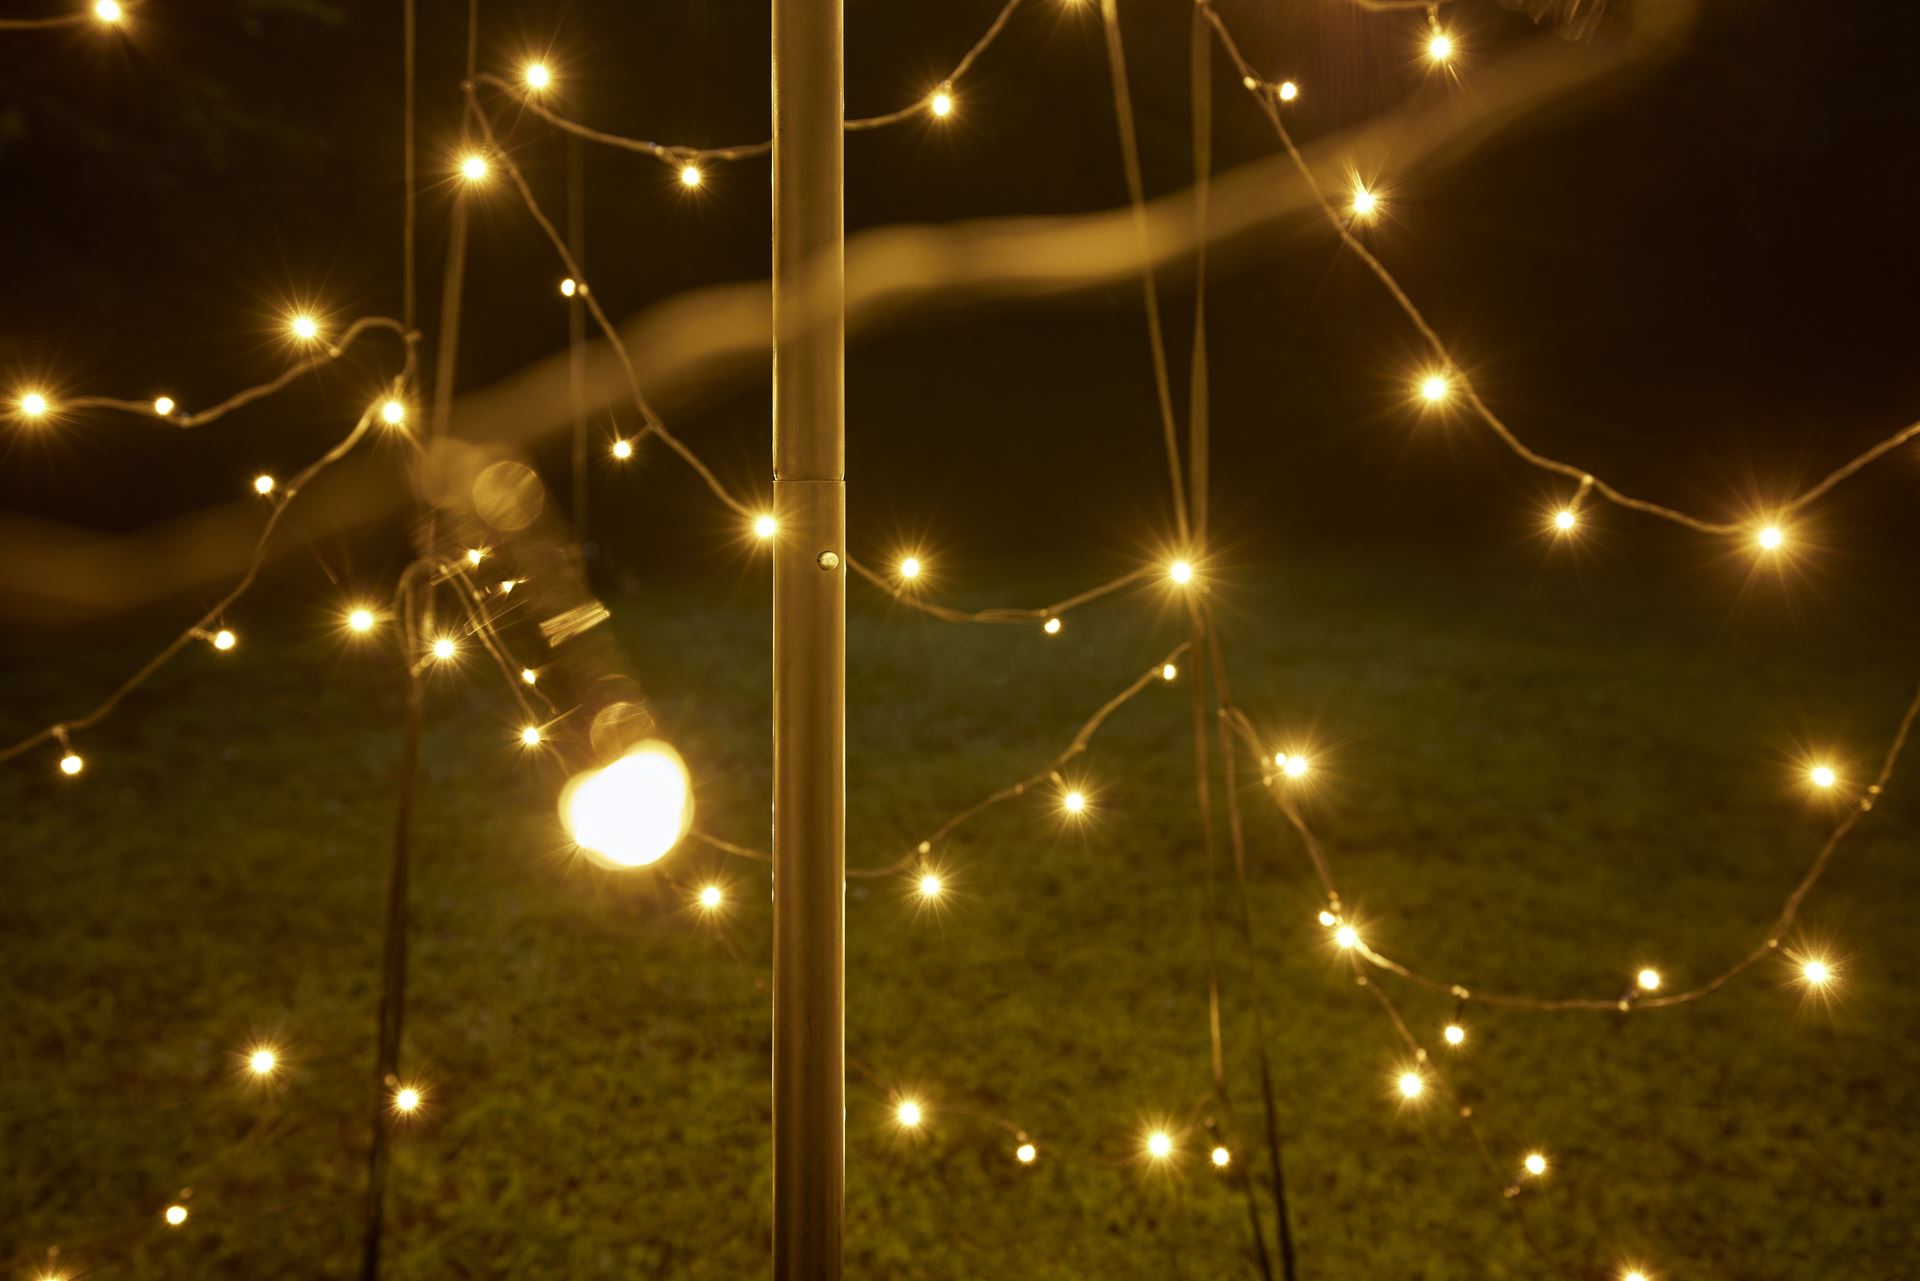 Fairybell-kerstverlichting-kerstboom-buiten-met-vlaggenmast-200cm-hoog-300-LED-lampjes-in-warmwitte-